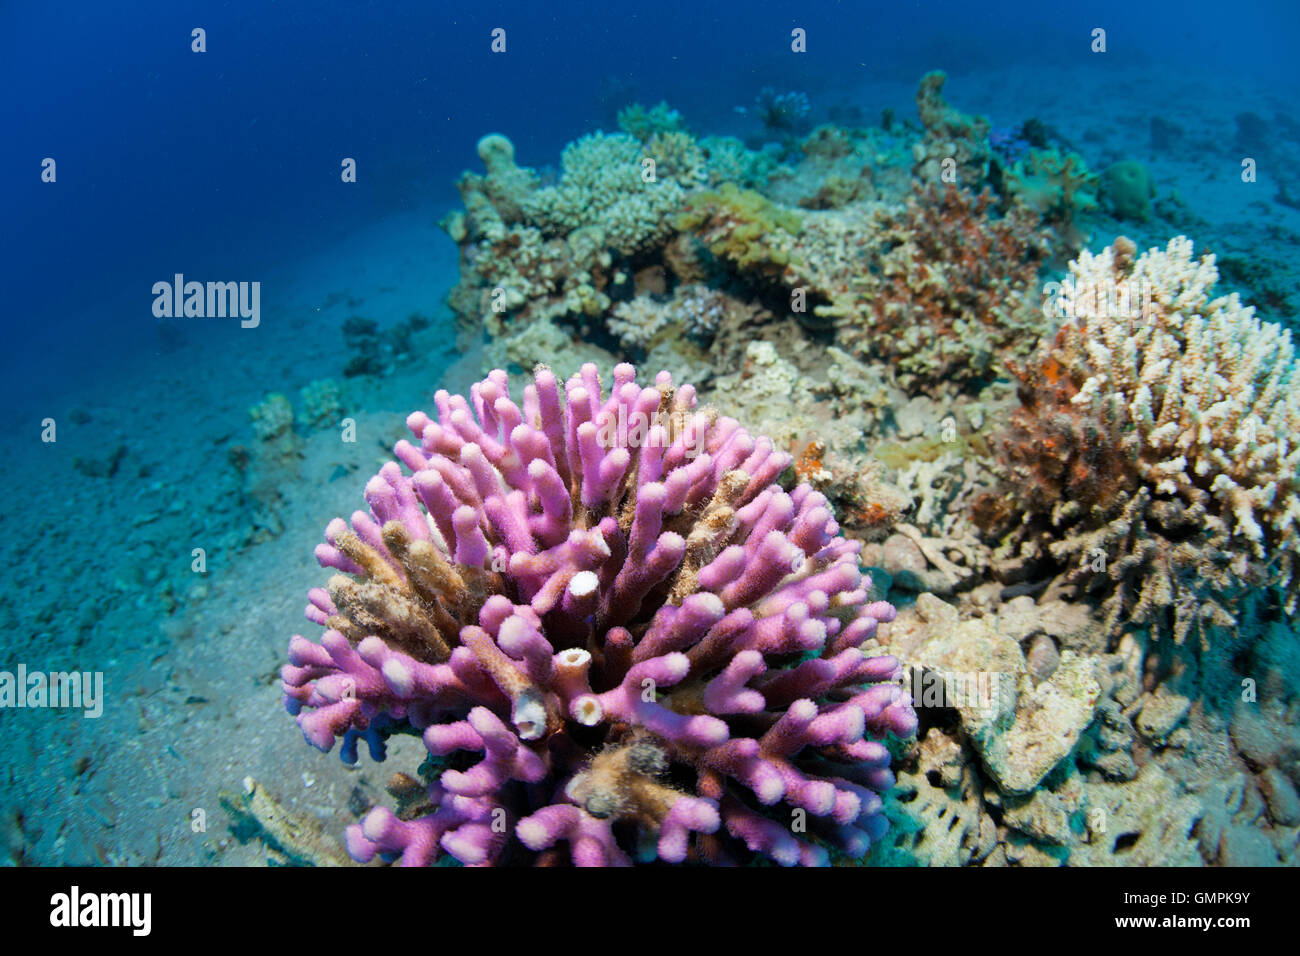 corals in the sea Stock Photo